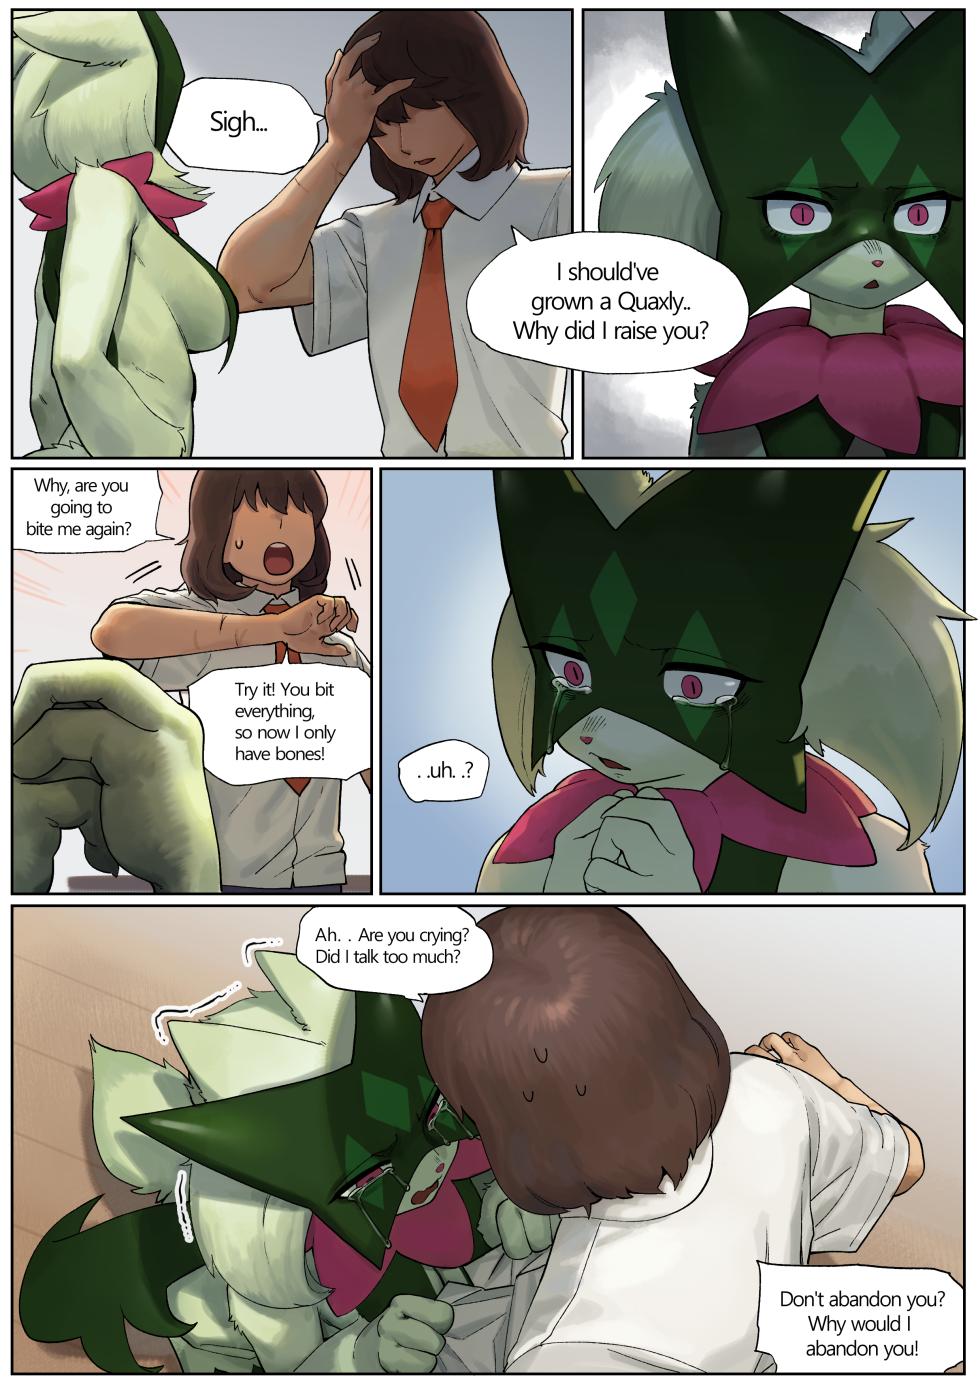 [Gudl] Meowscarada (Pokémon) - Page 3